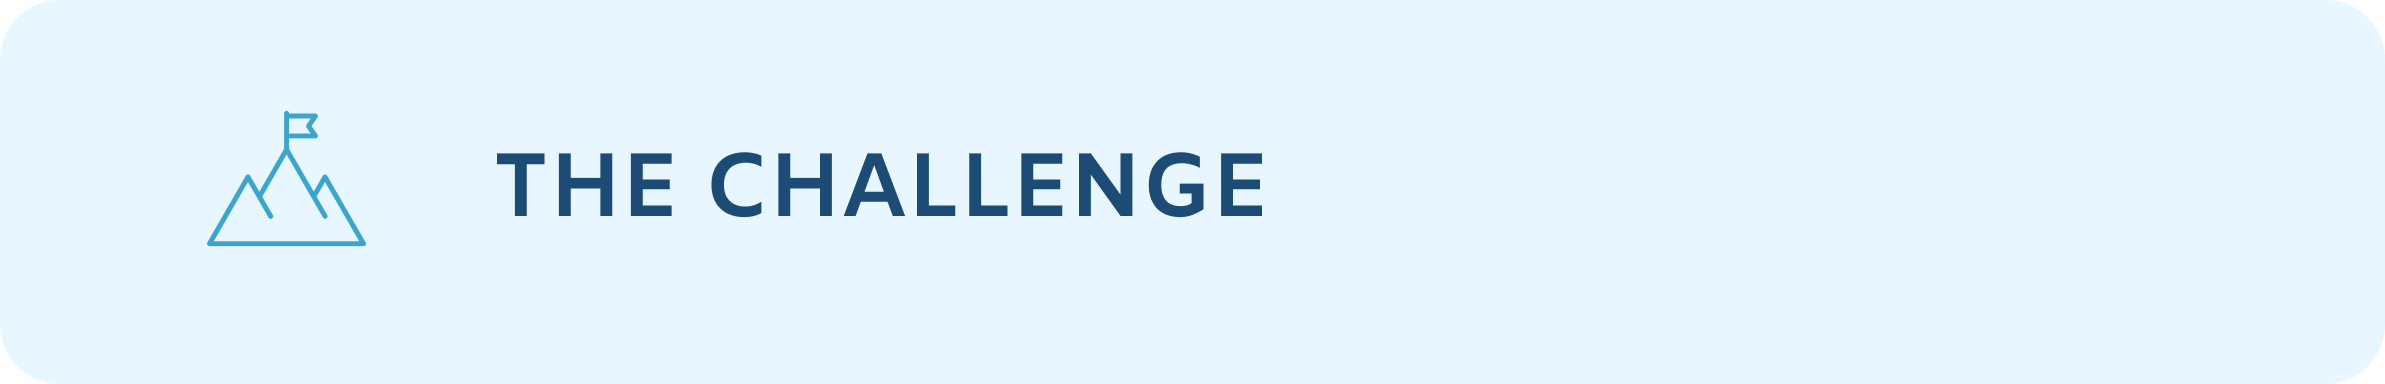 CaseStudy-Challenge